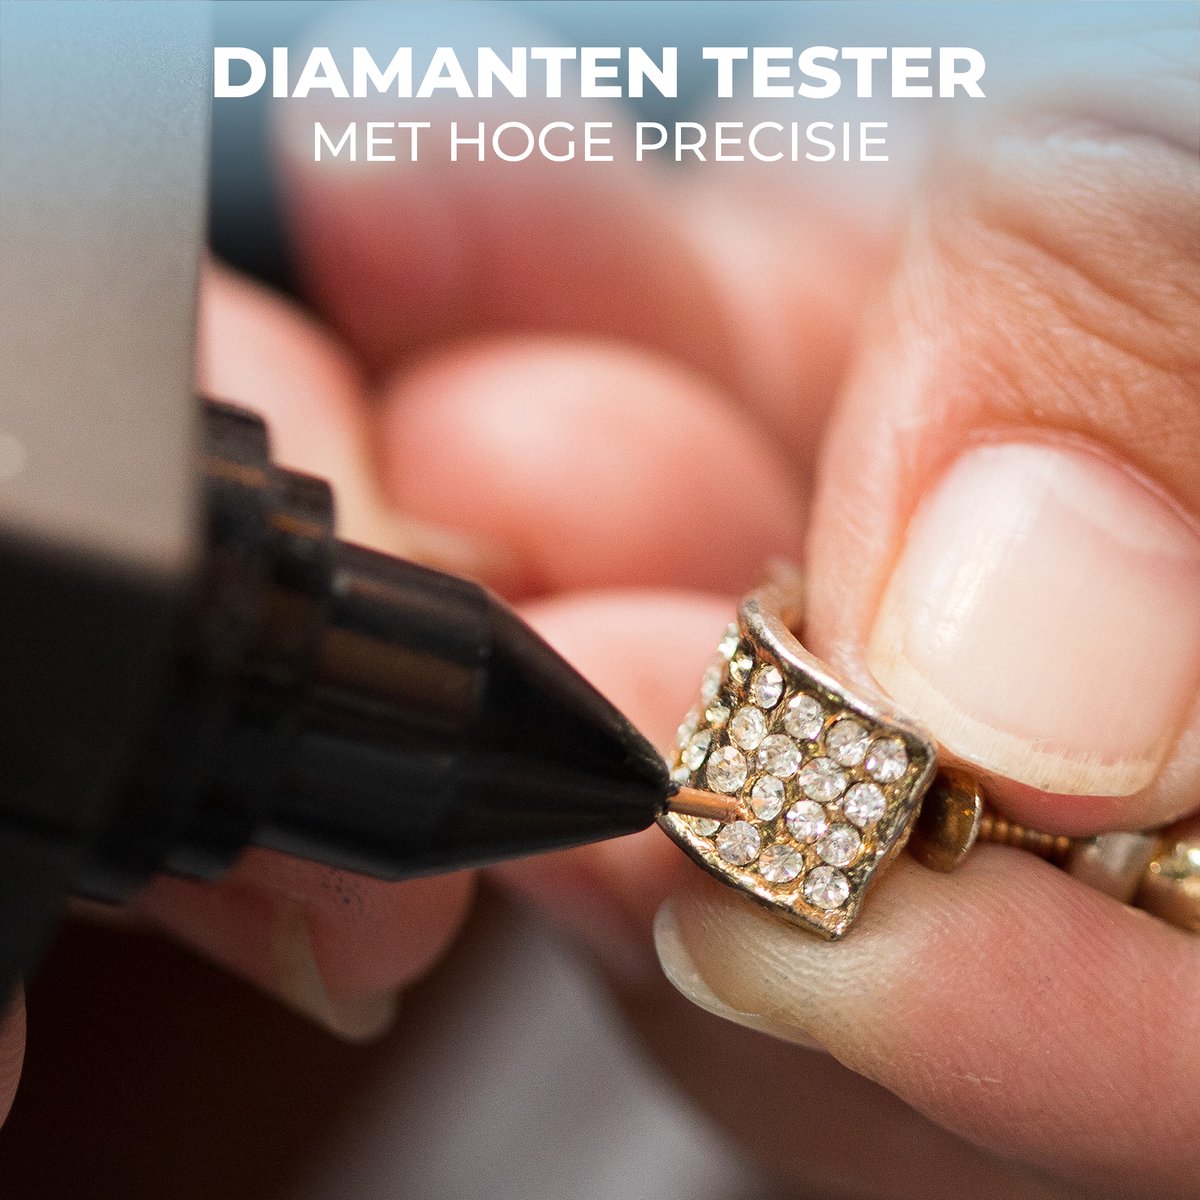 Stylo testeur de diamant professionnel de haute précision